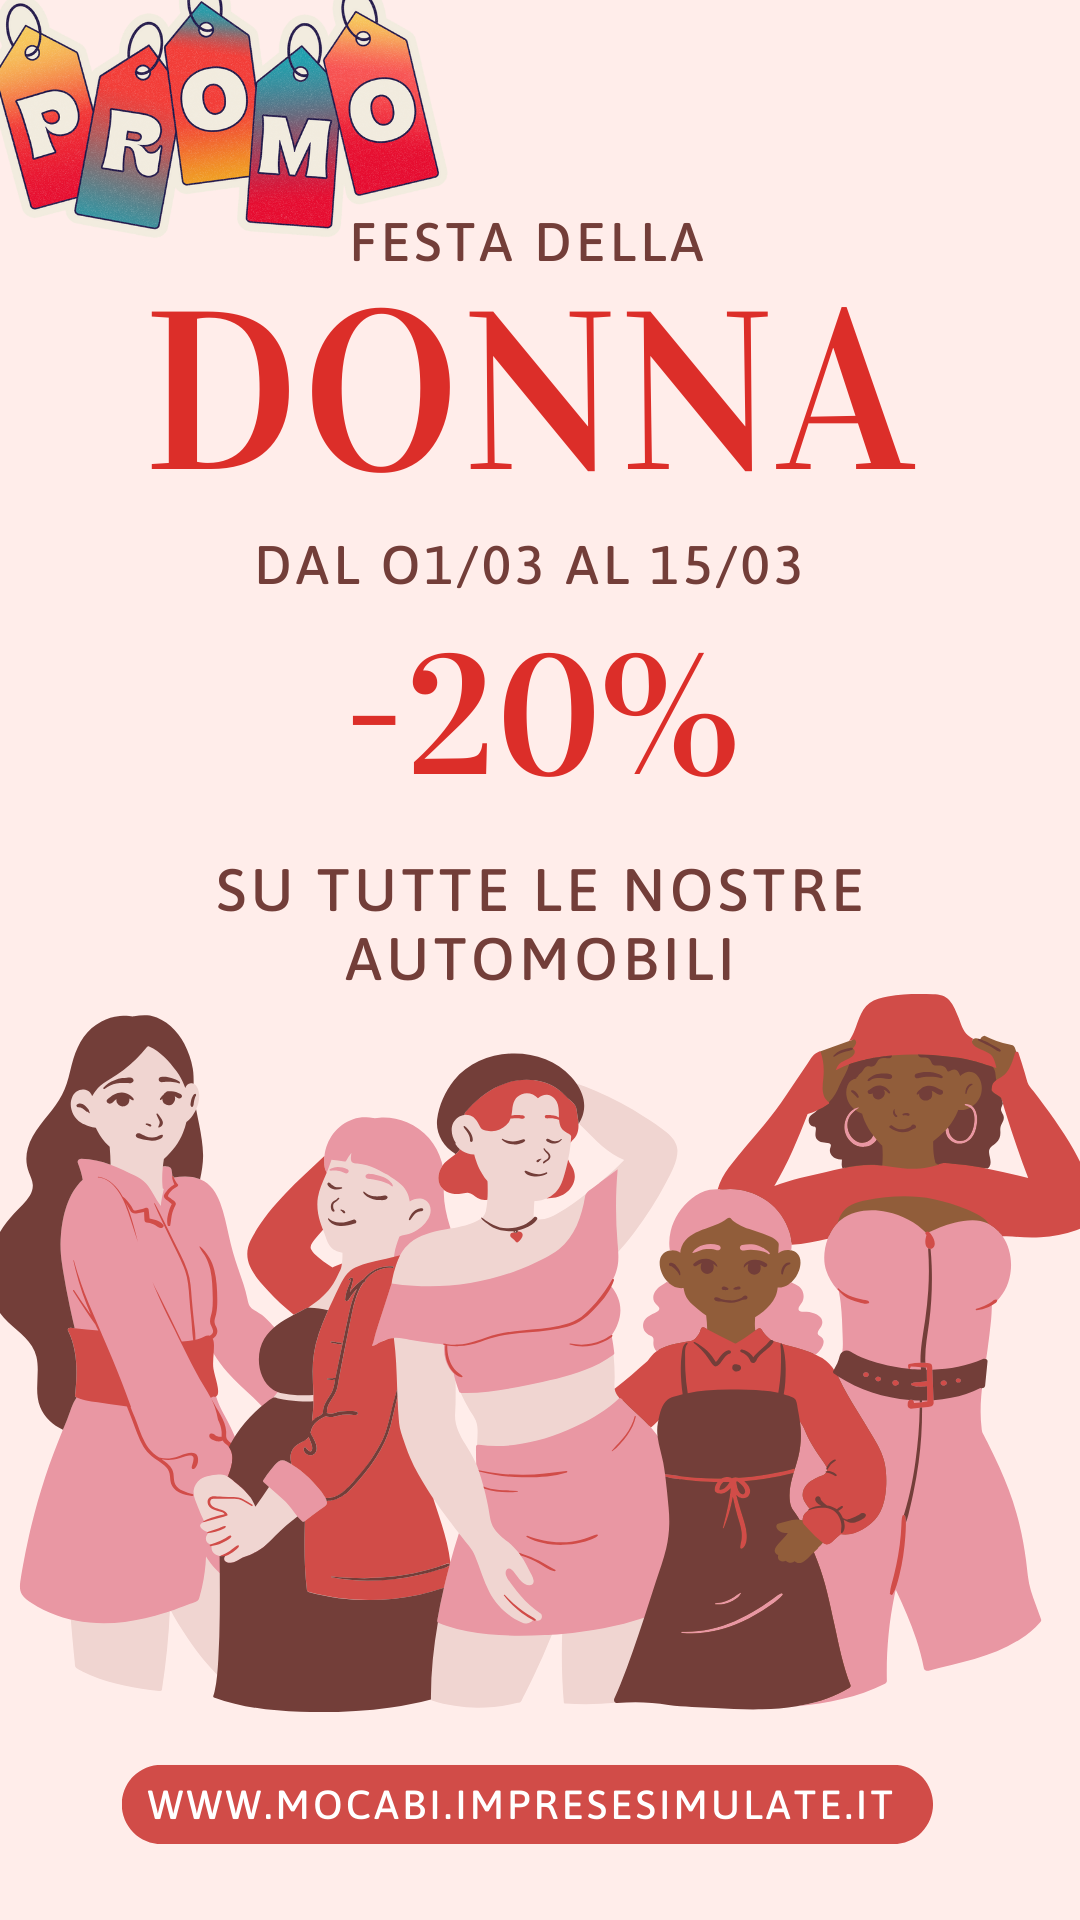 Festa della Donna Promozione Illustrazione Rosa Rosso La tua Storia